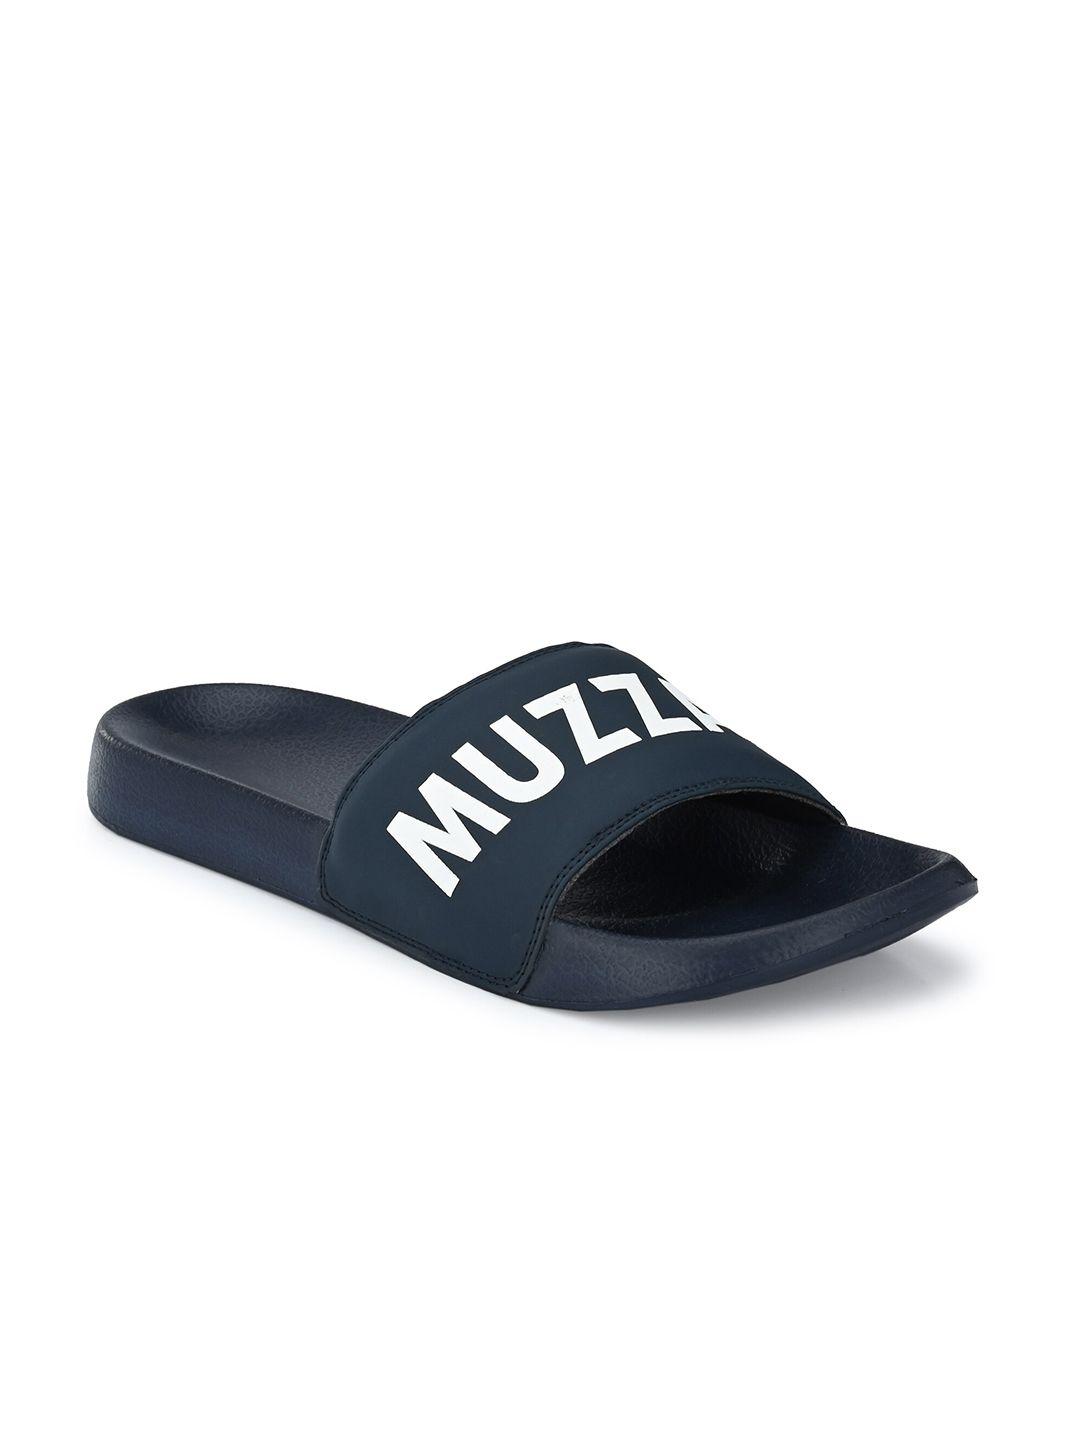 muzzati men blue & white printed sliders